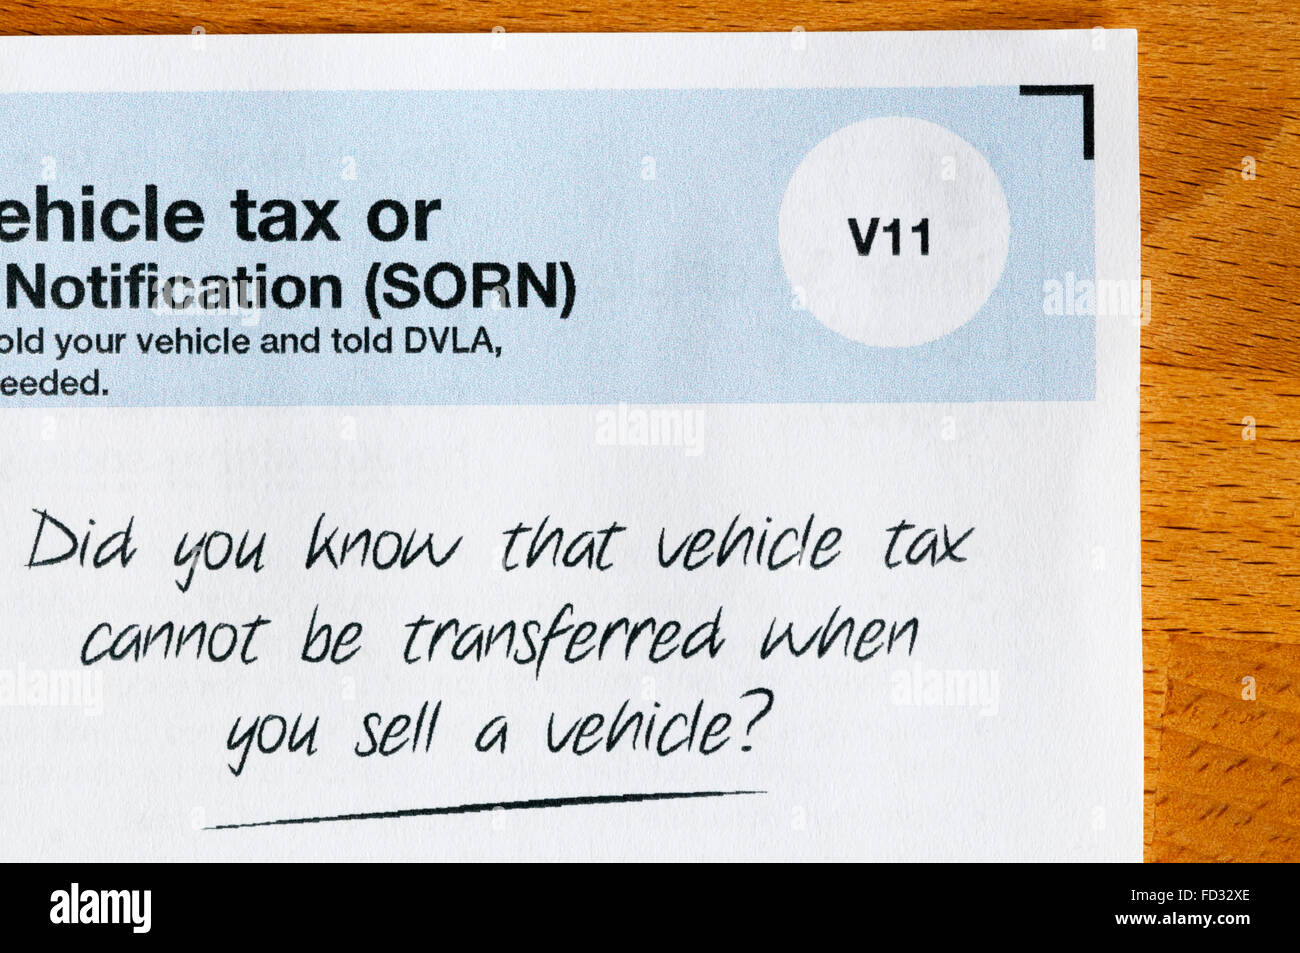 Un recordatorio de la DVLA que el impuesto de vehículos no puede transferirse cuando un vehículo se vende. Foto de stock